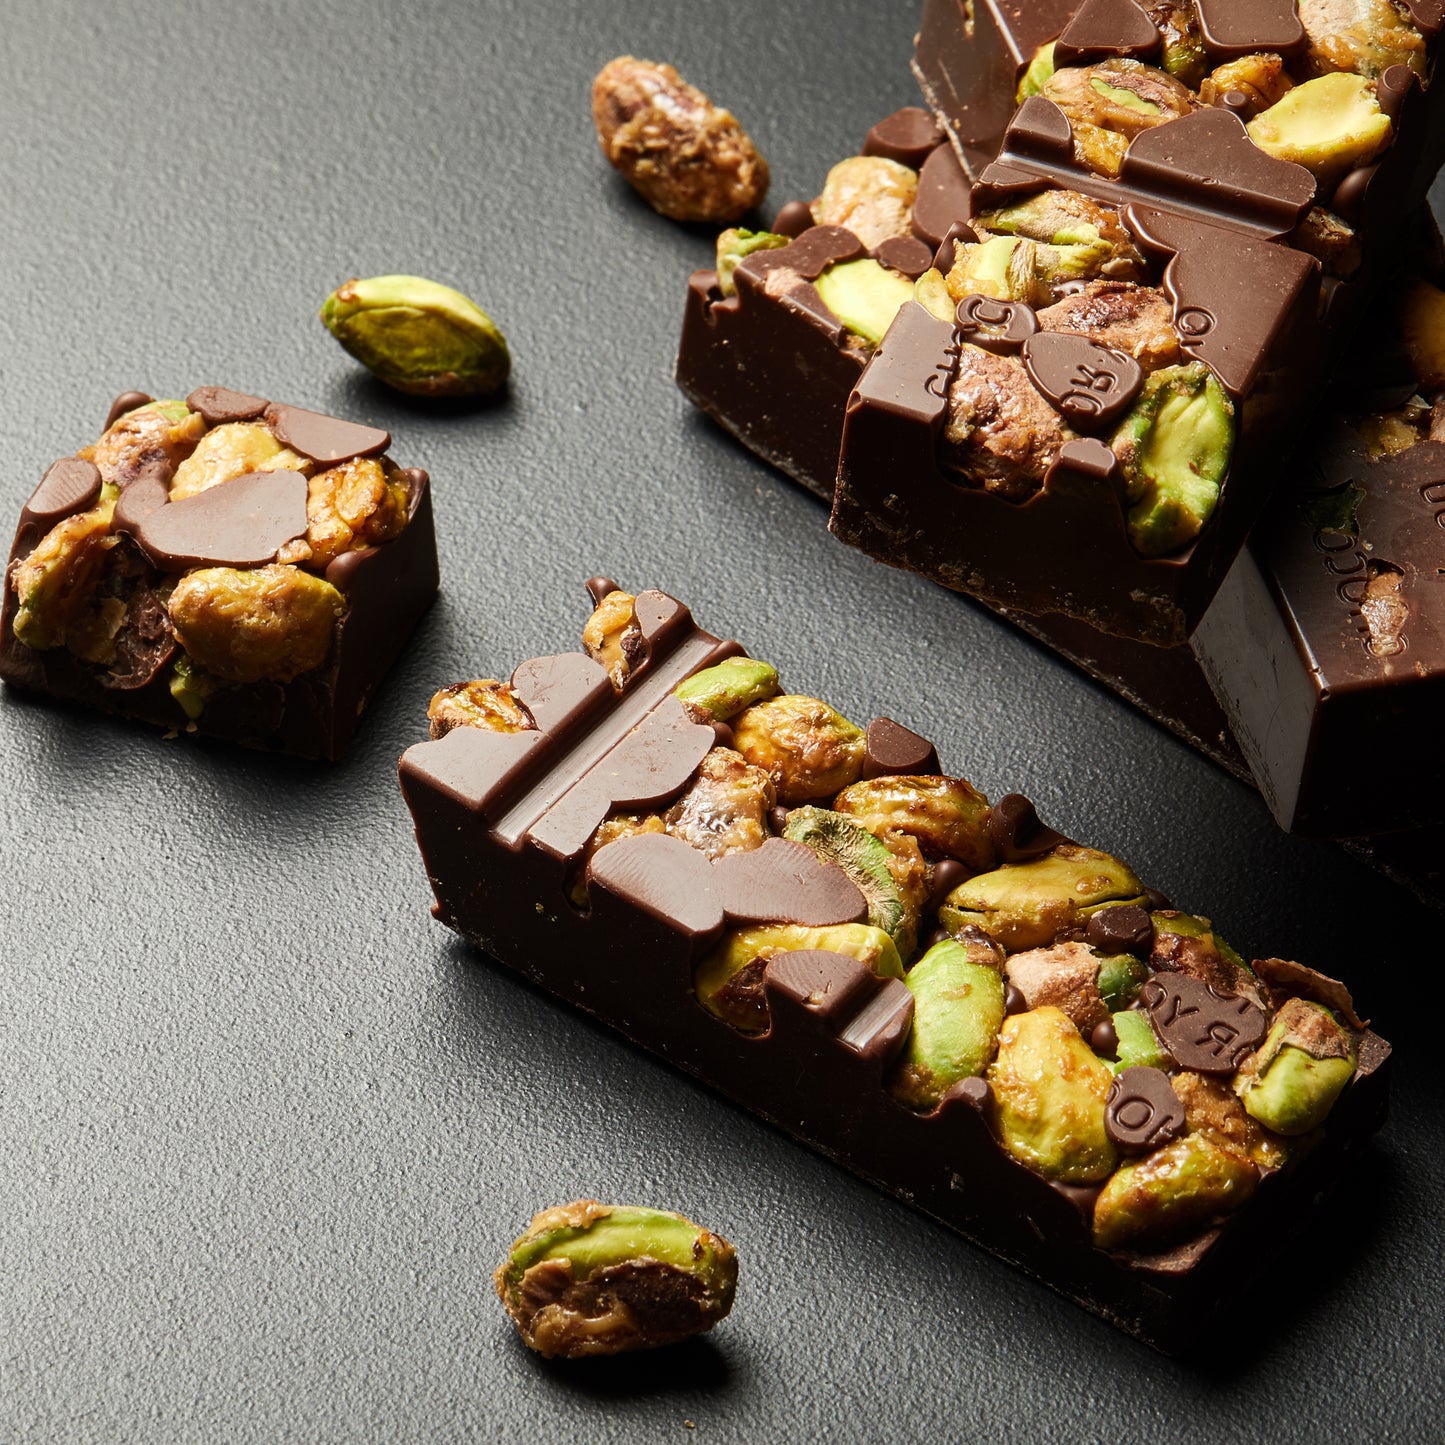 Photo of the pistachio chocolate 